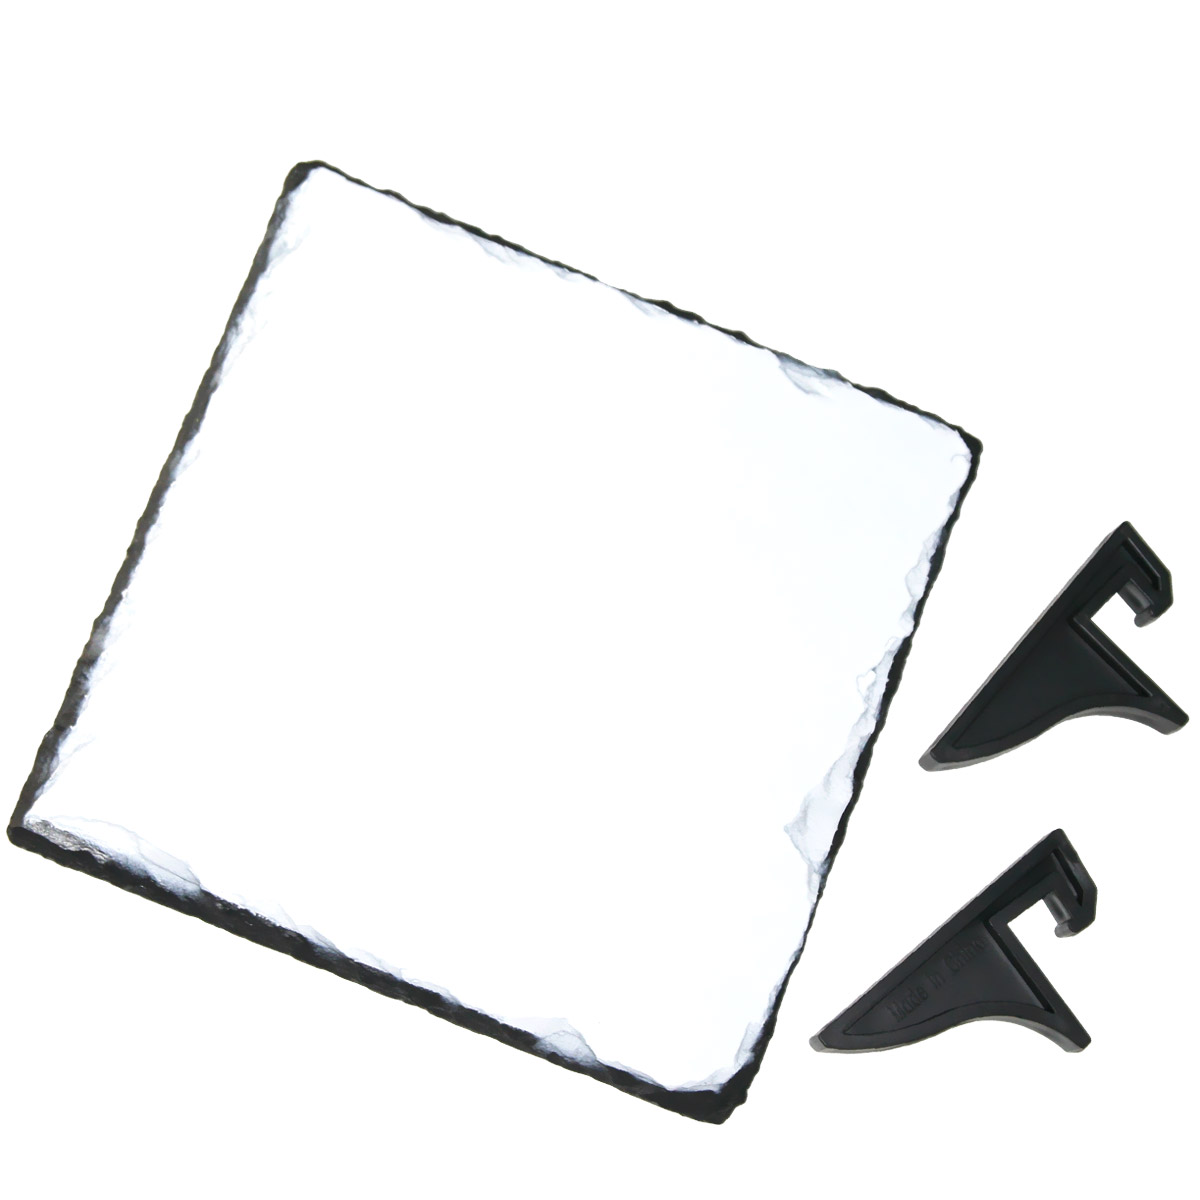 Kwadratowa płyta kamienna do sublimacji - bok 19 cm